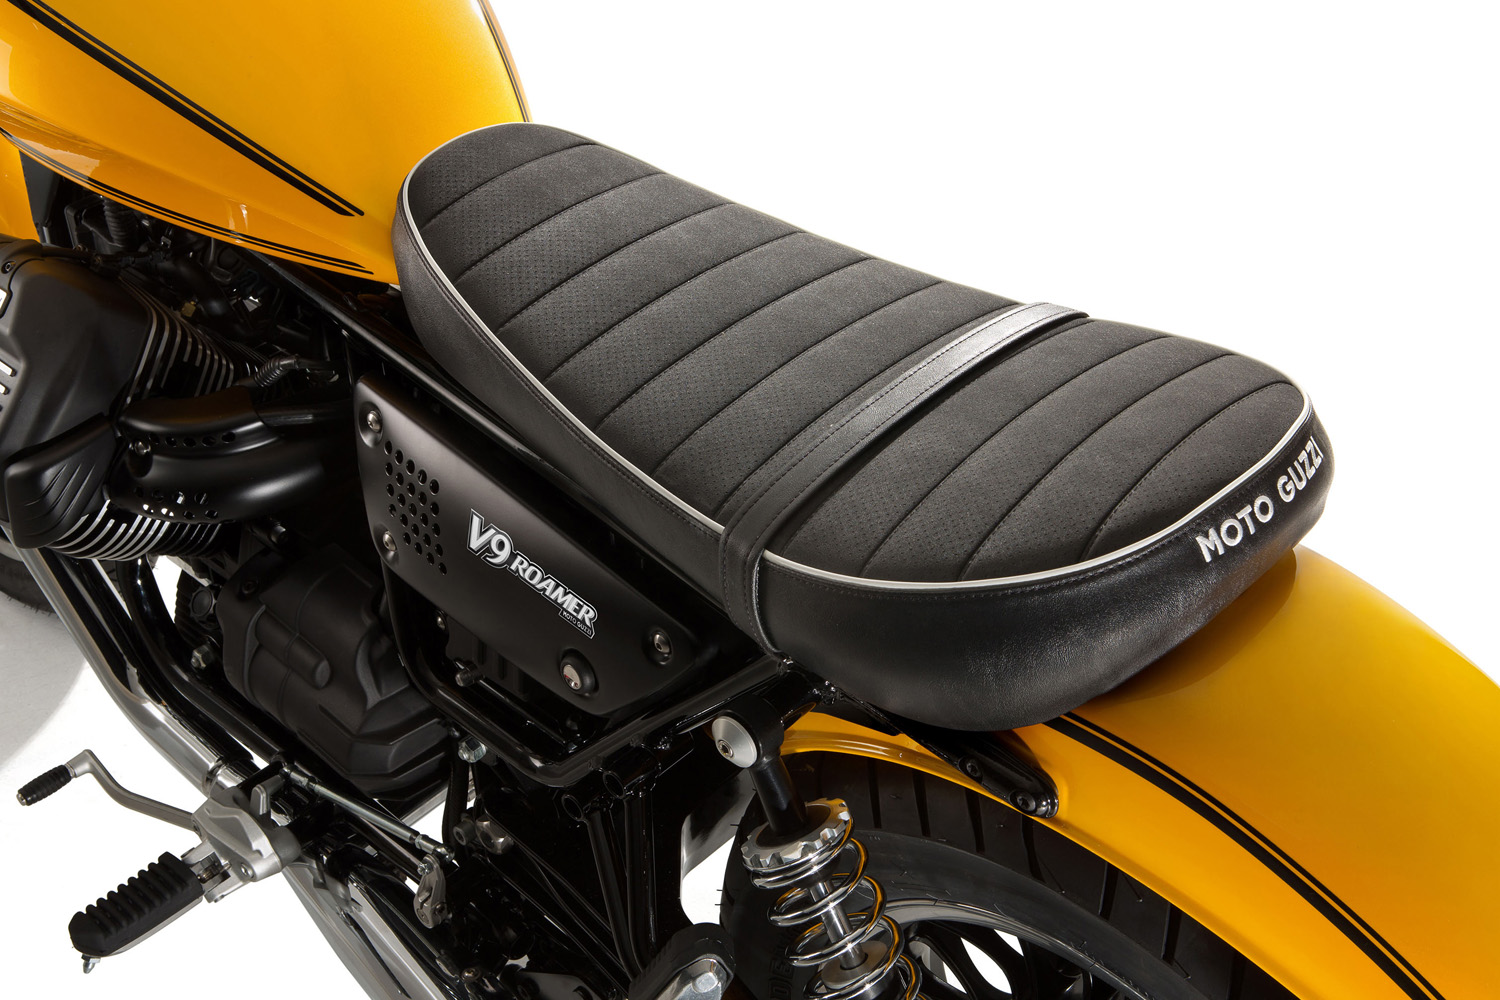 Moto Guzzi V9 Roamer seat view